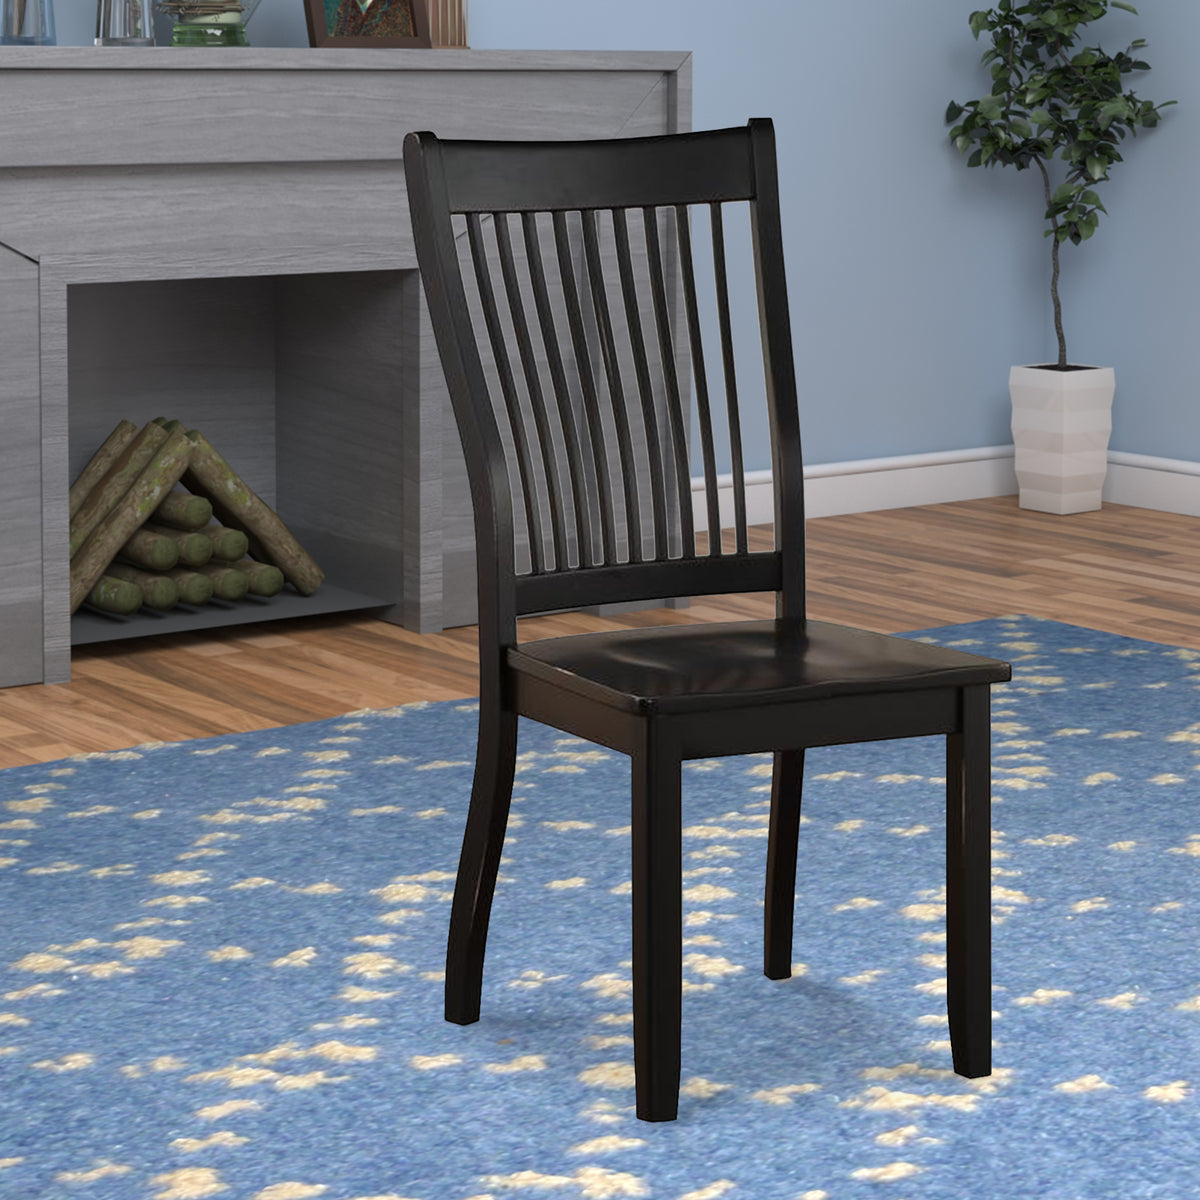 Wooden Side Chair with Slatted Backrest, Set of 2, Black - BM186186